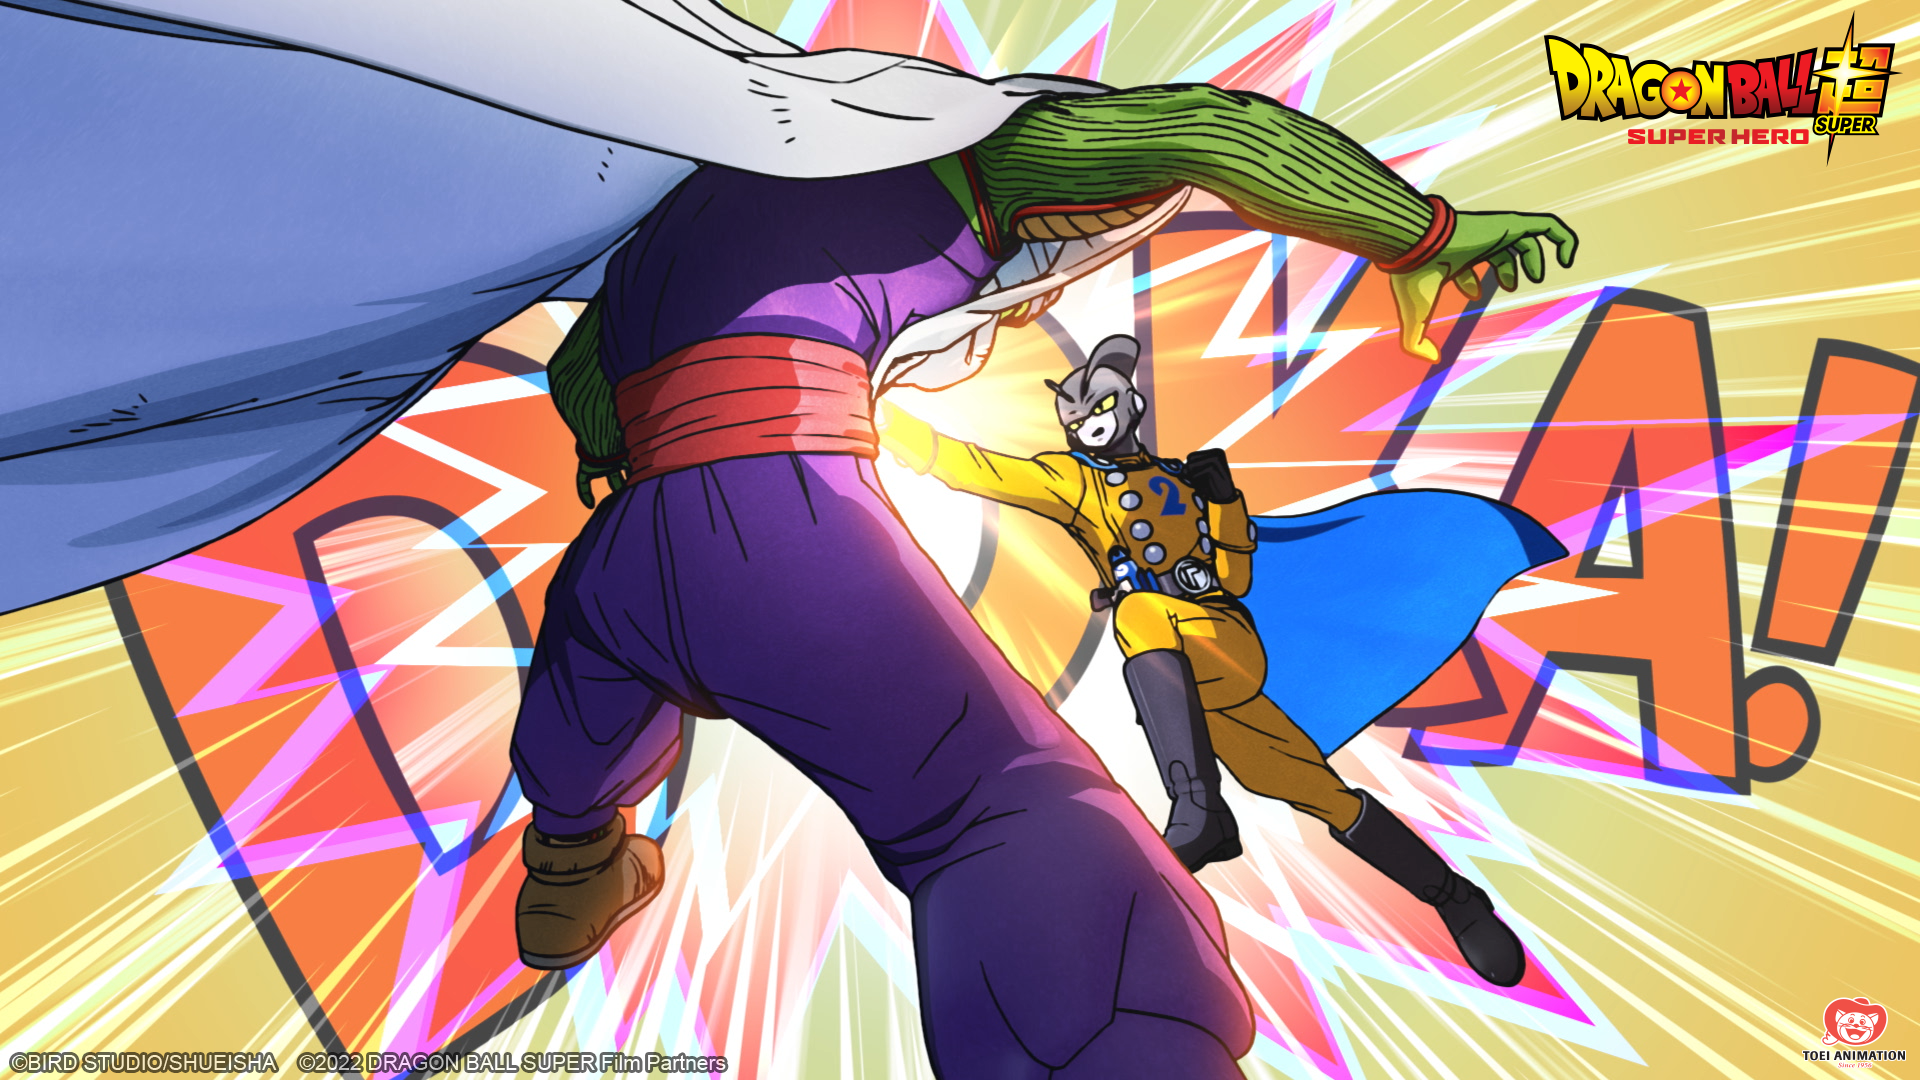 Divulgada cena de abertura de 'Dragon Ball Super: Super Hero